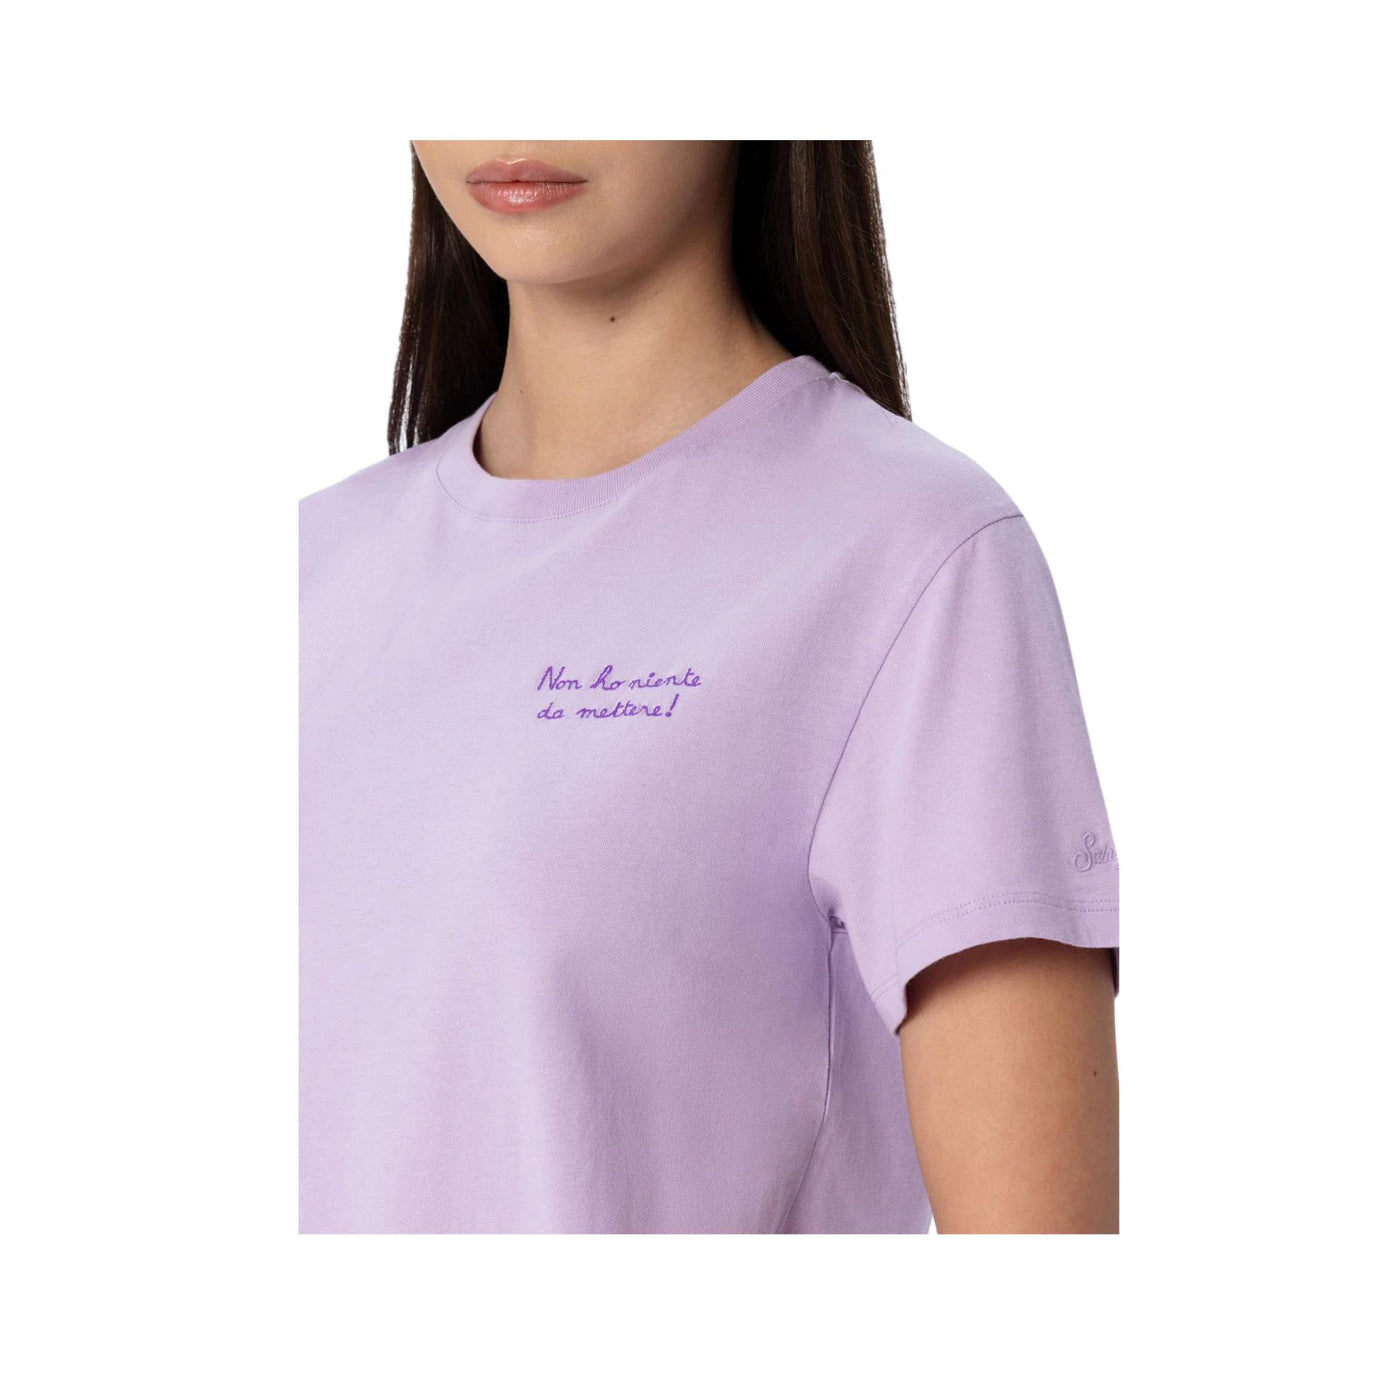 Dettaglio T-shirt Donna Lilla con scritta viola